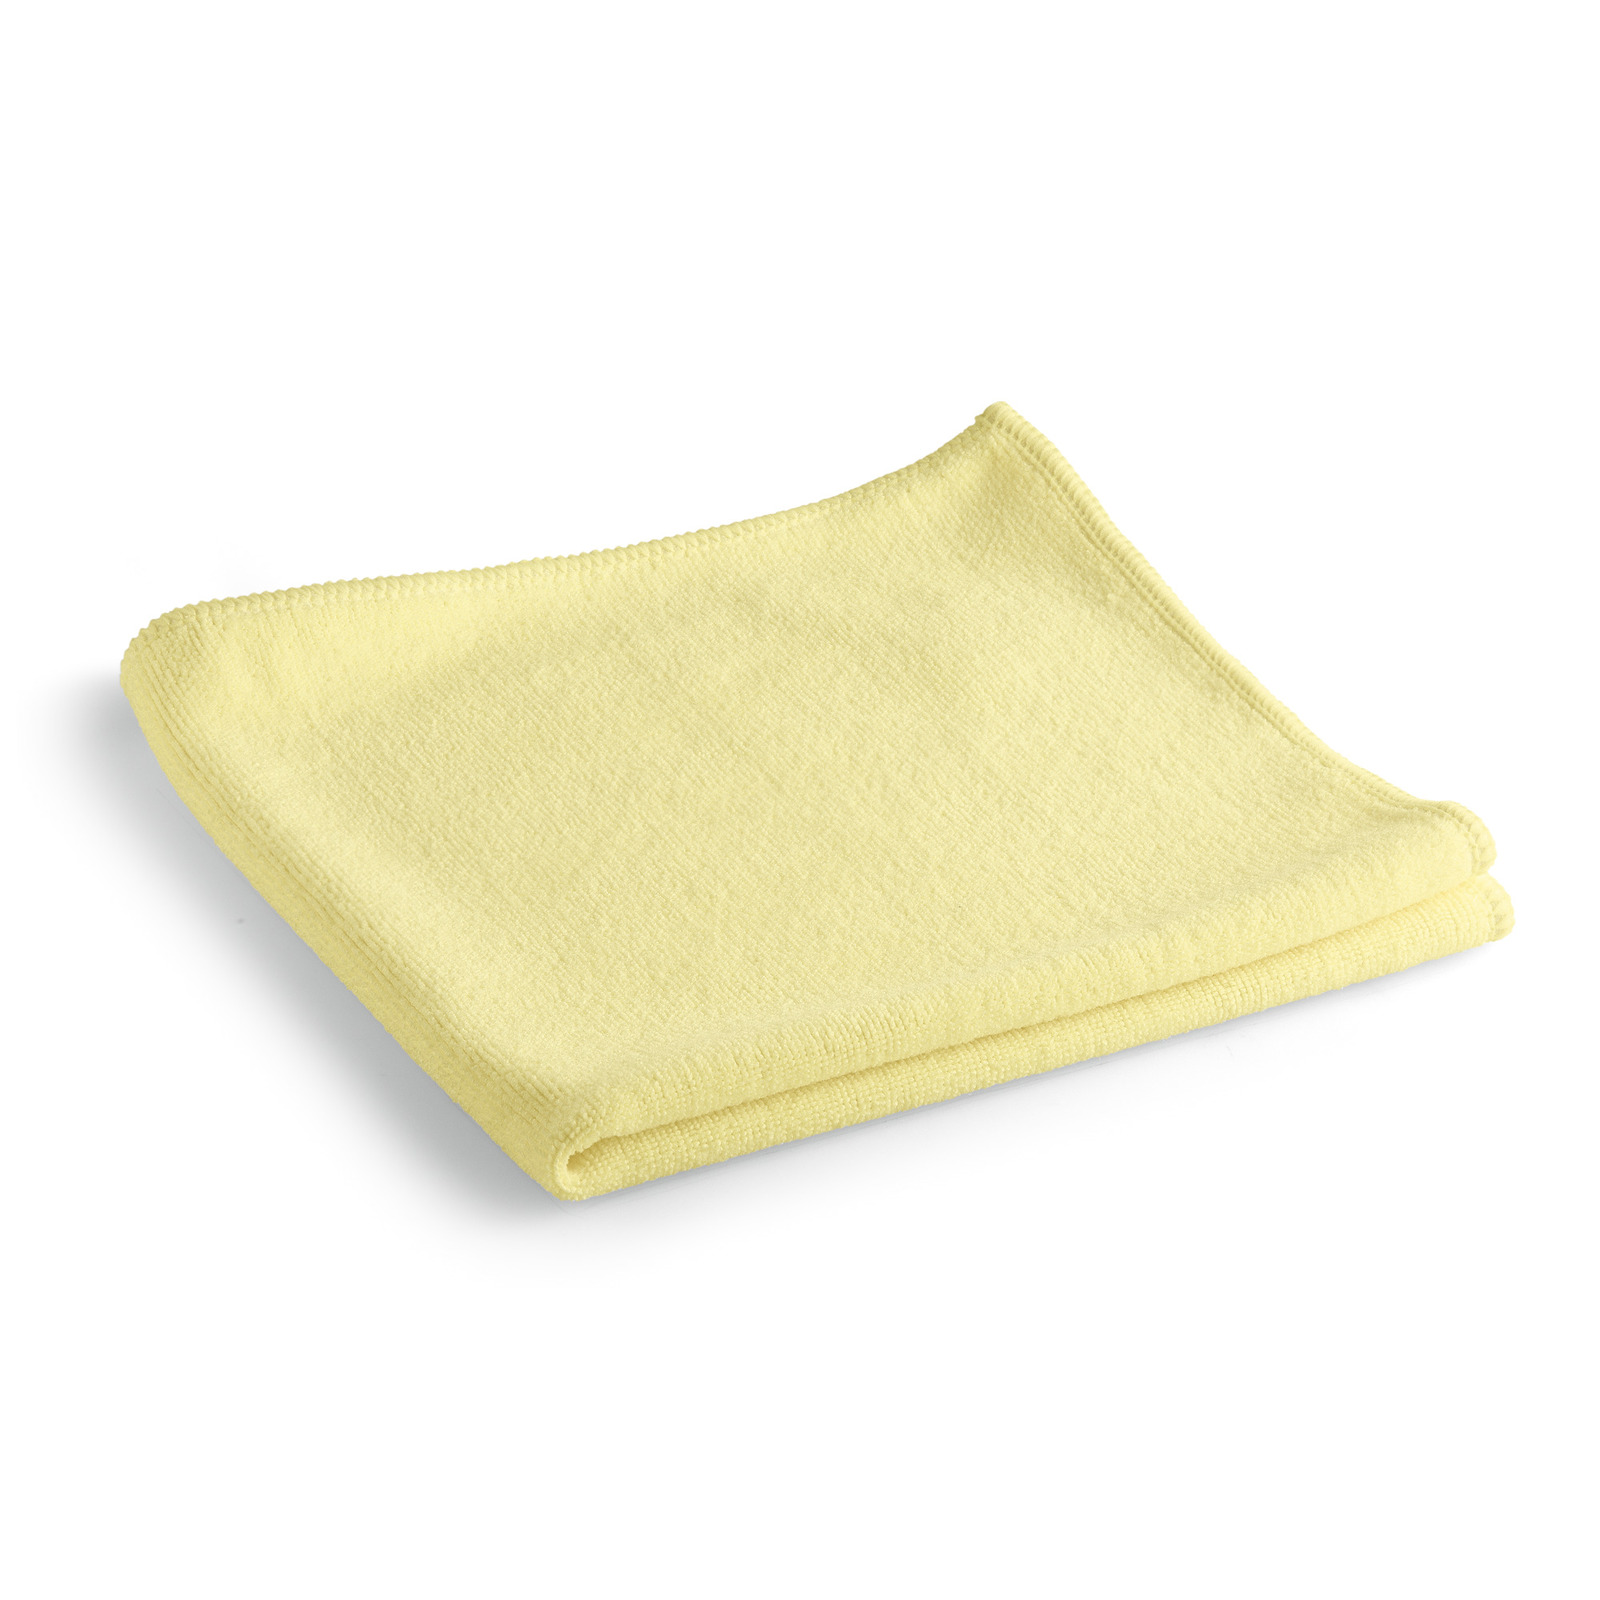 Kärcher - Mikrofasertuch Premium gelb 